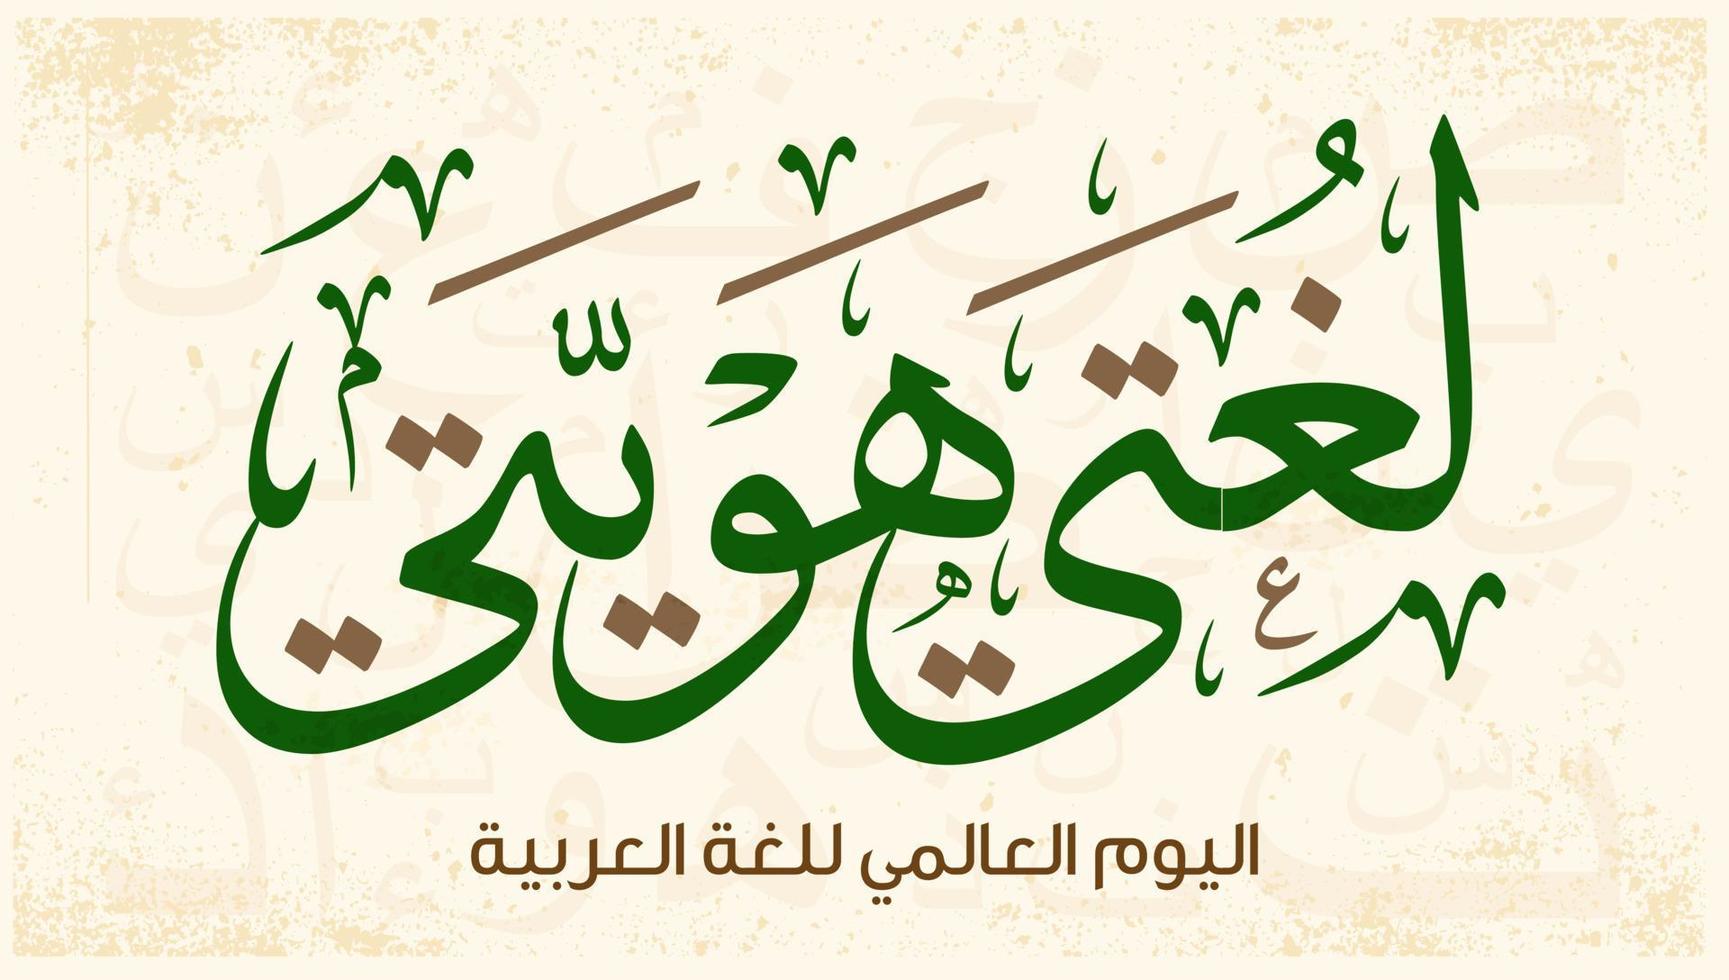 conception de calligraphie arabe de la journée internationale de la langue arabe. 18 décembre jour de la langue arabe dans le monde. salutation de la journée de la langue arabe en langue arabe. vecteur